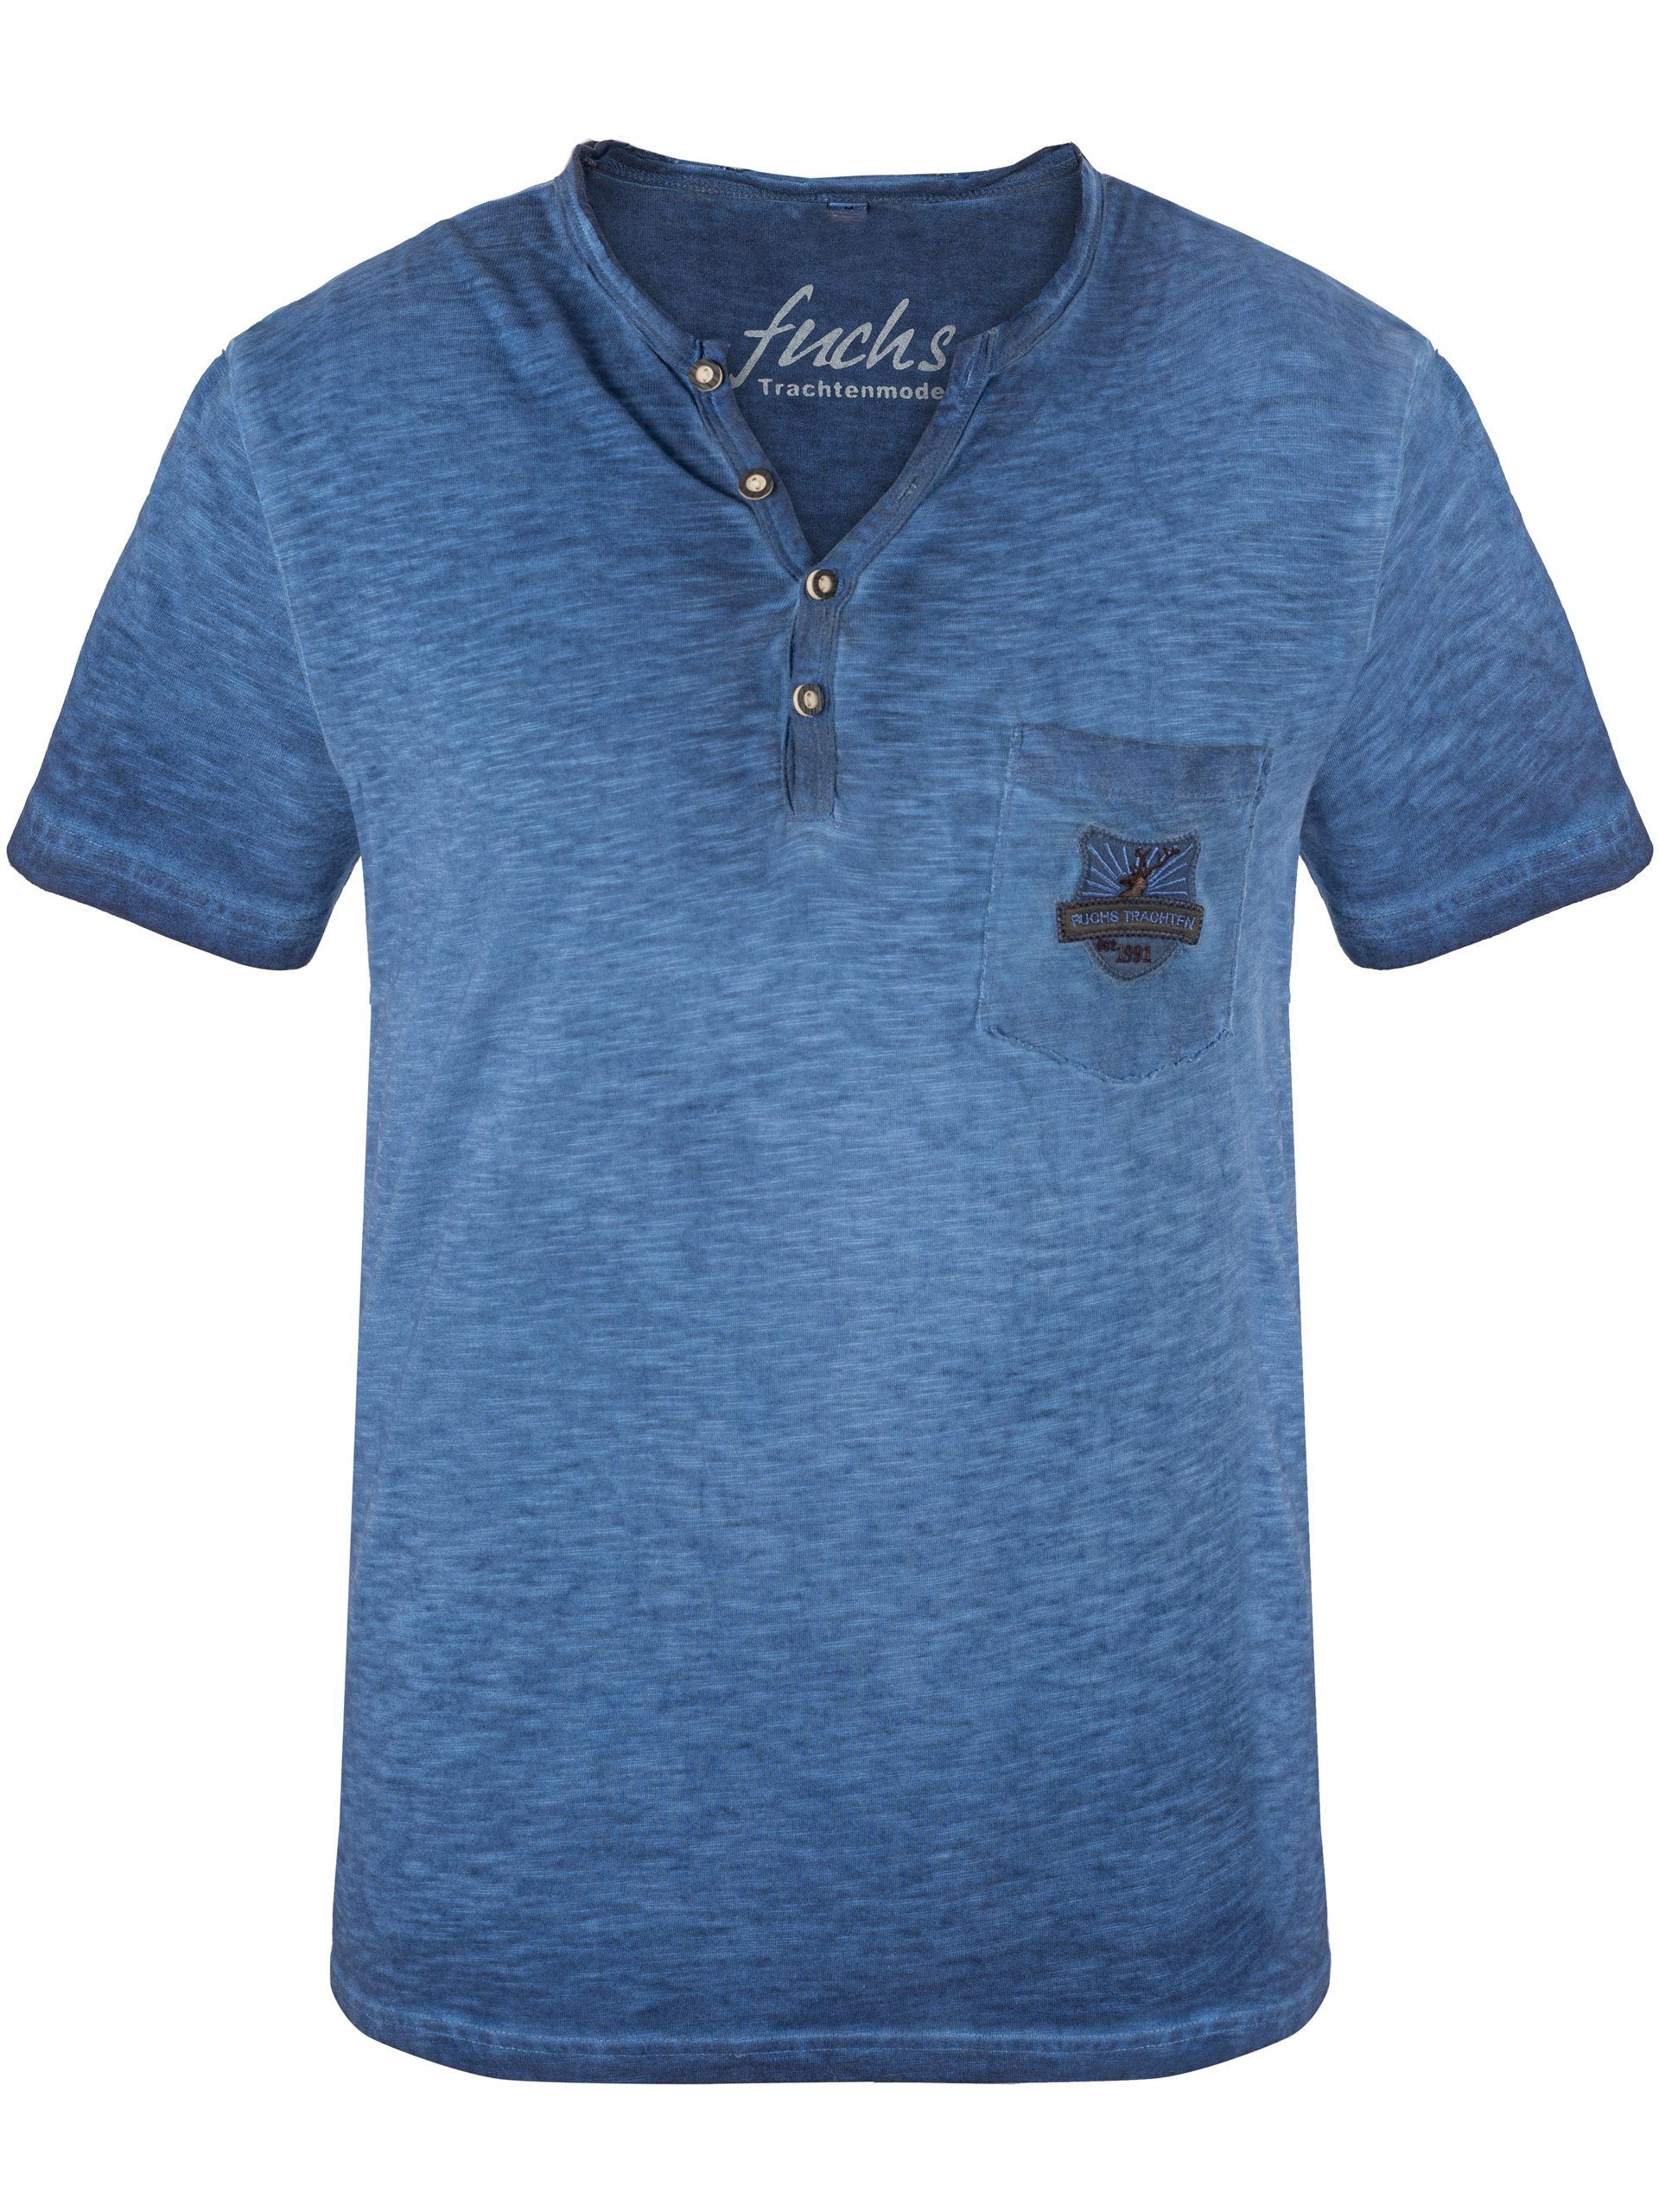 % T-Shirt Shirt aus Baumwolle Trachten blau FUCHS Theo 100